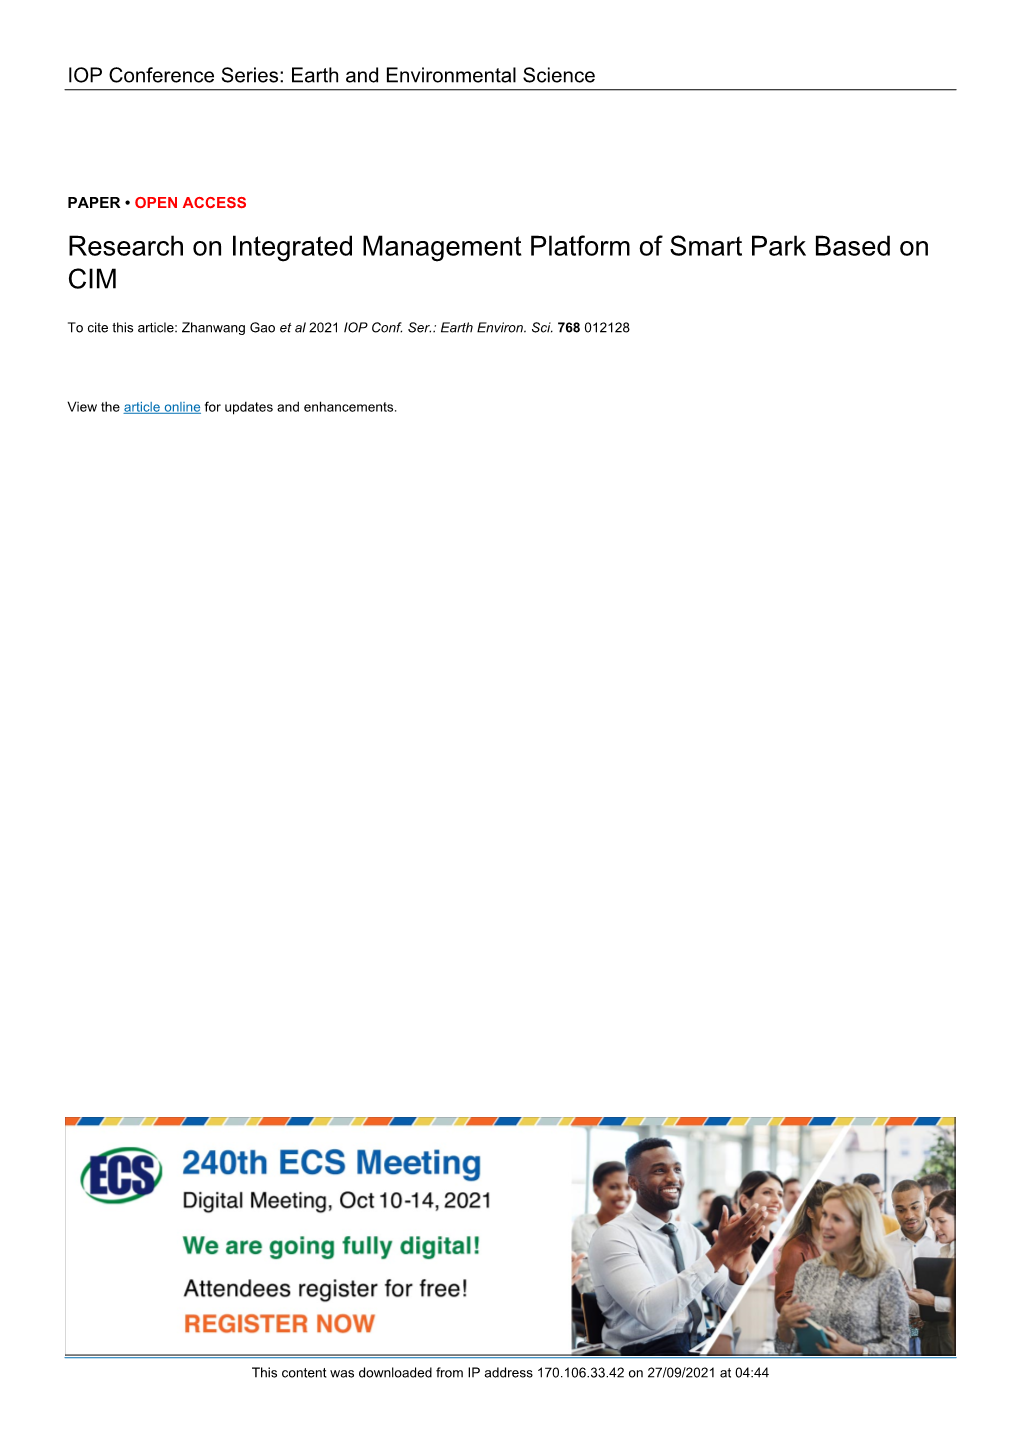 Research on Integrated Management Platform of Smart Park Based on CIM